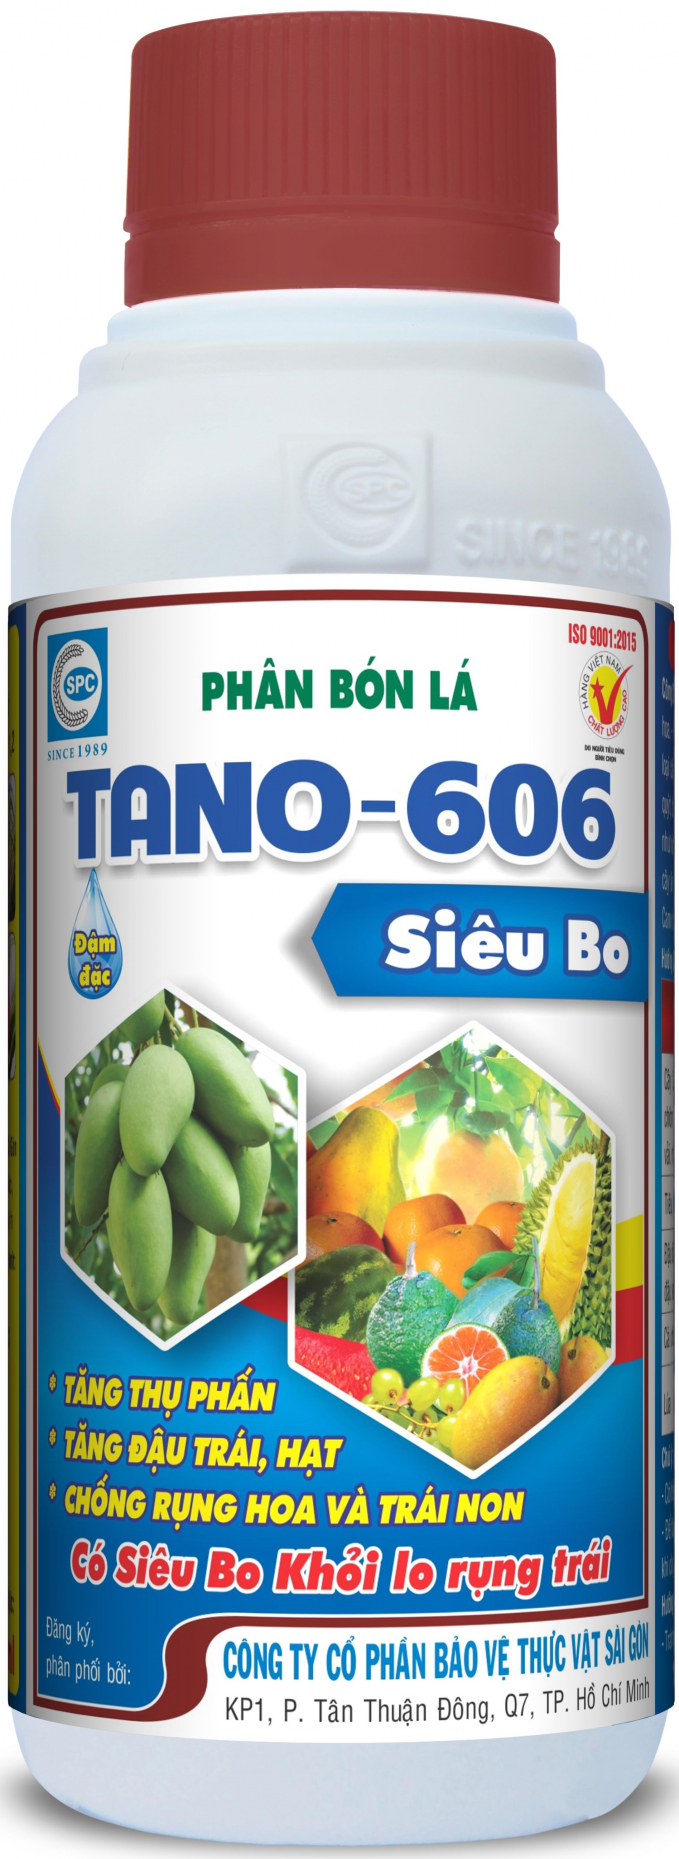 Phân bón lá TANO 606 chứa hàm lượng Bo dễ tiêu cao, phun trực tiếp lên lá và trái non sẽ nhanh chóng khắc phục và ngăn ngừa tình trạng thiếu Bo. Ảnh: Đỗ Hoàng.